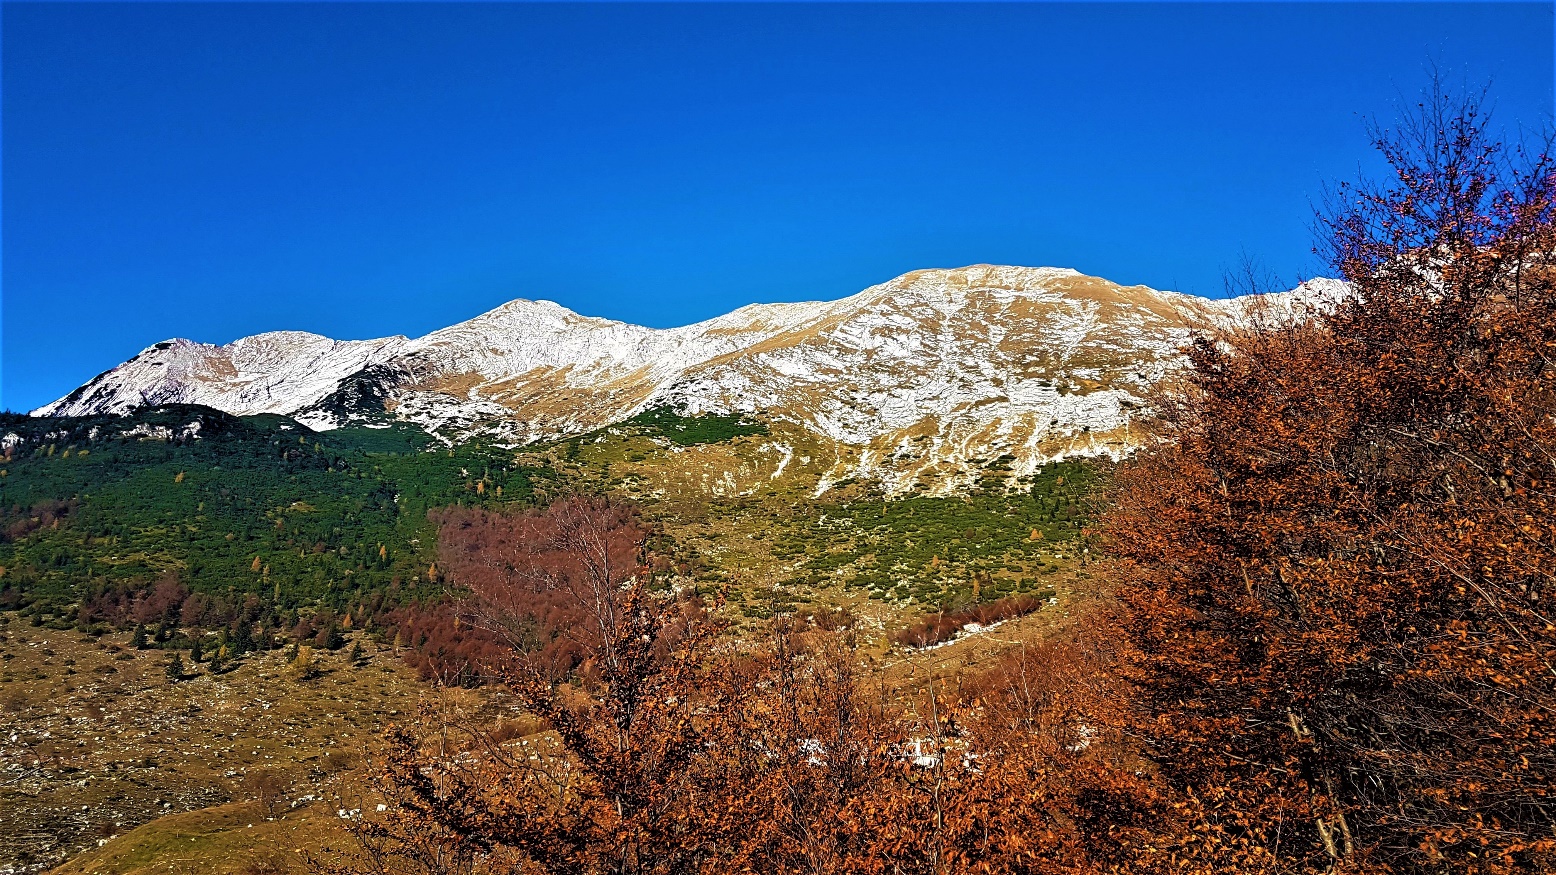 Slika, ki vsebuje besede zunanje, gora, narava, hrib

Opis je samodejno ustvarjen